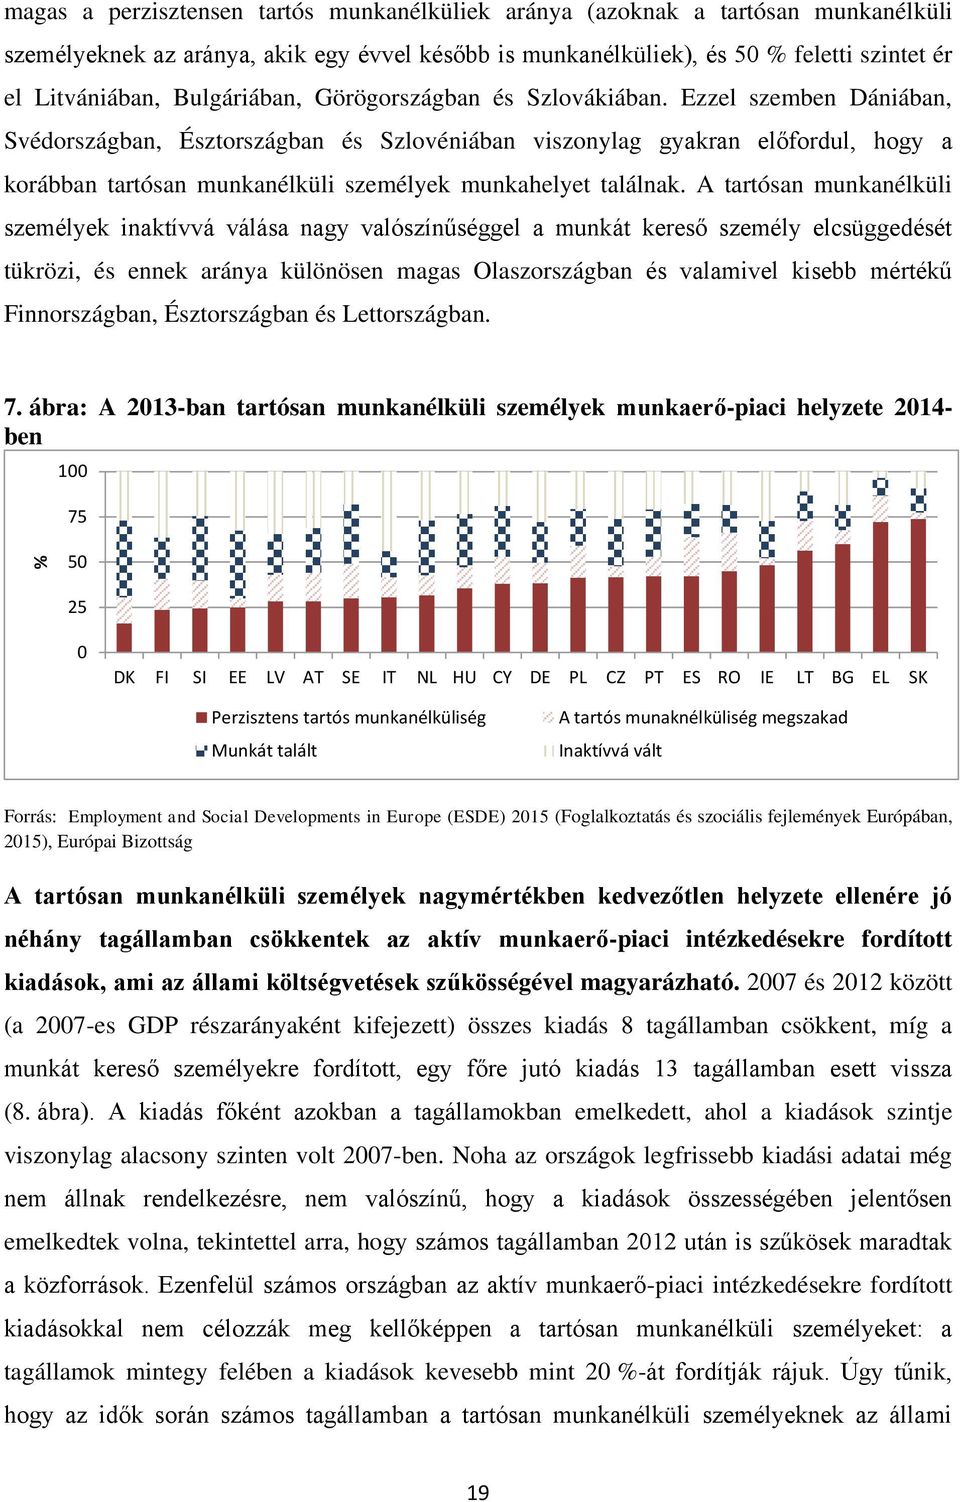 Ezzel szemben Dániában, Svédországban, Észtországban és Szlovéniában viszonylag gyakran előfordul, hogy a korábban tartósan munkanélküli személyek munkahelyet találnak.